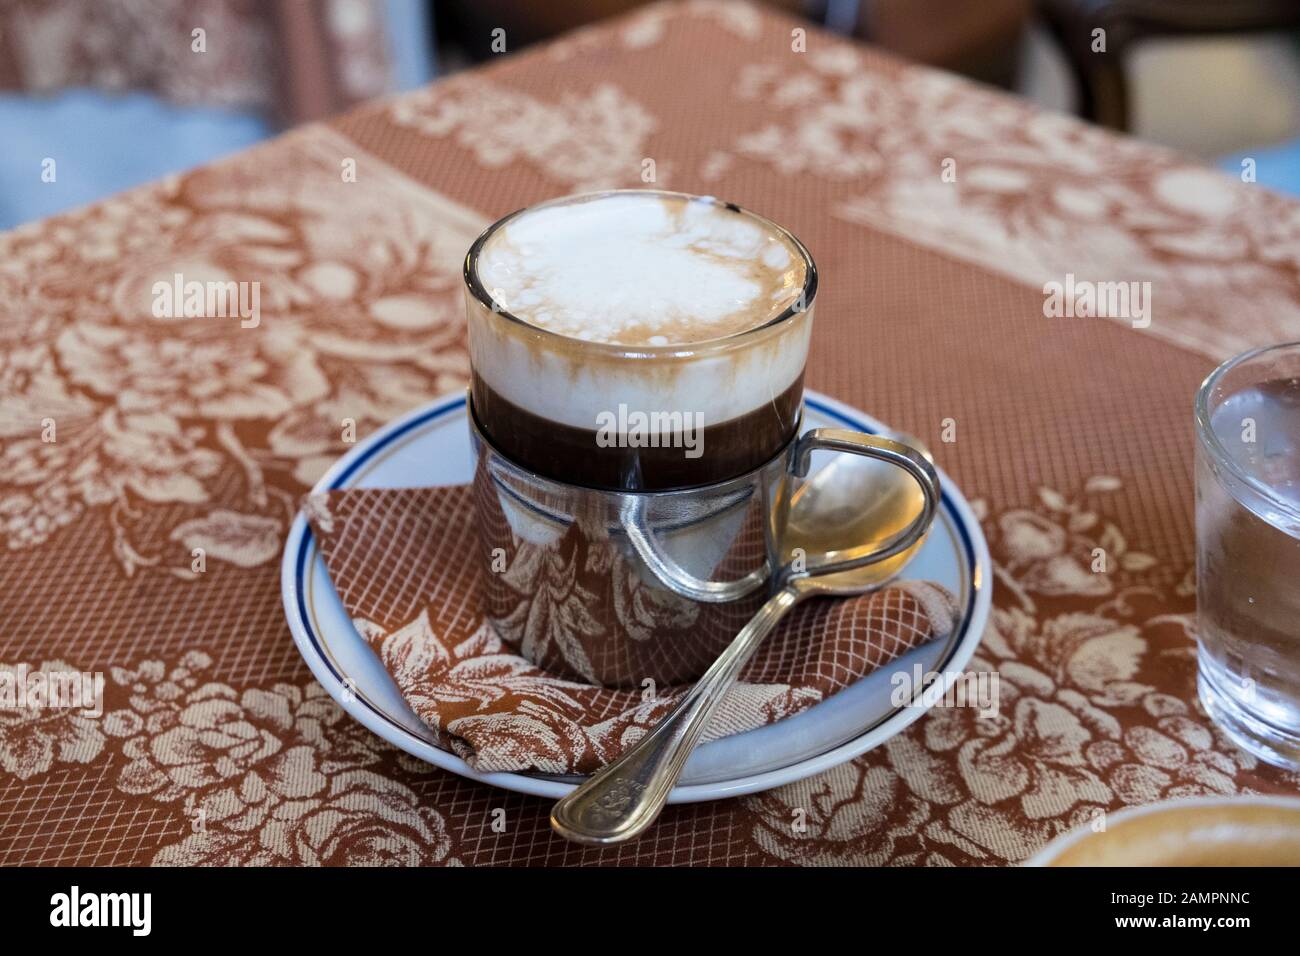 Bicerin coffee immagini e fotografie stock ad alta risoluzione - Alamy